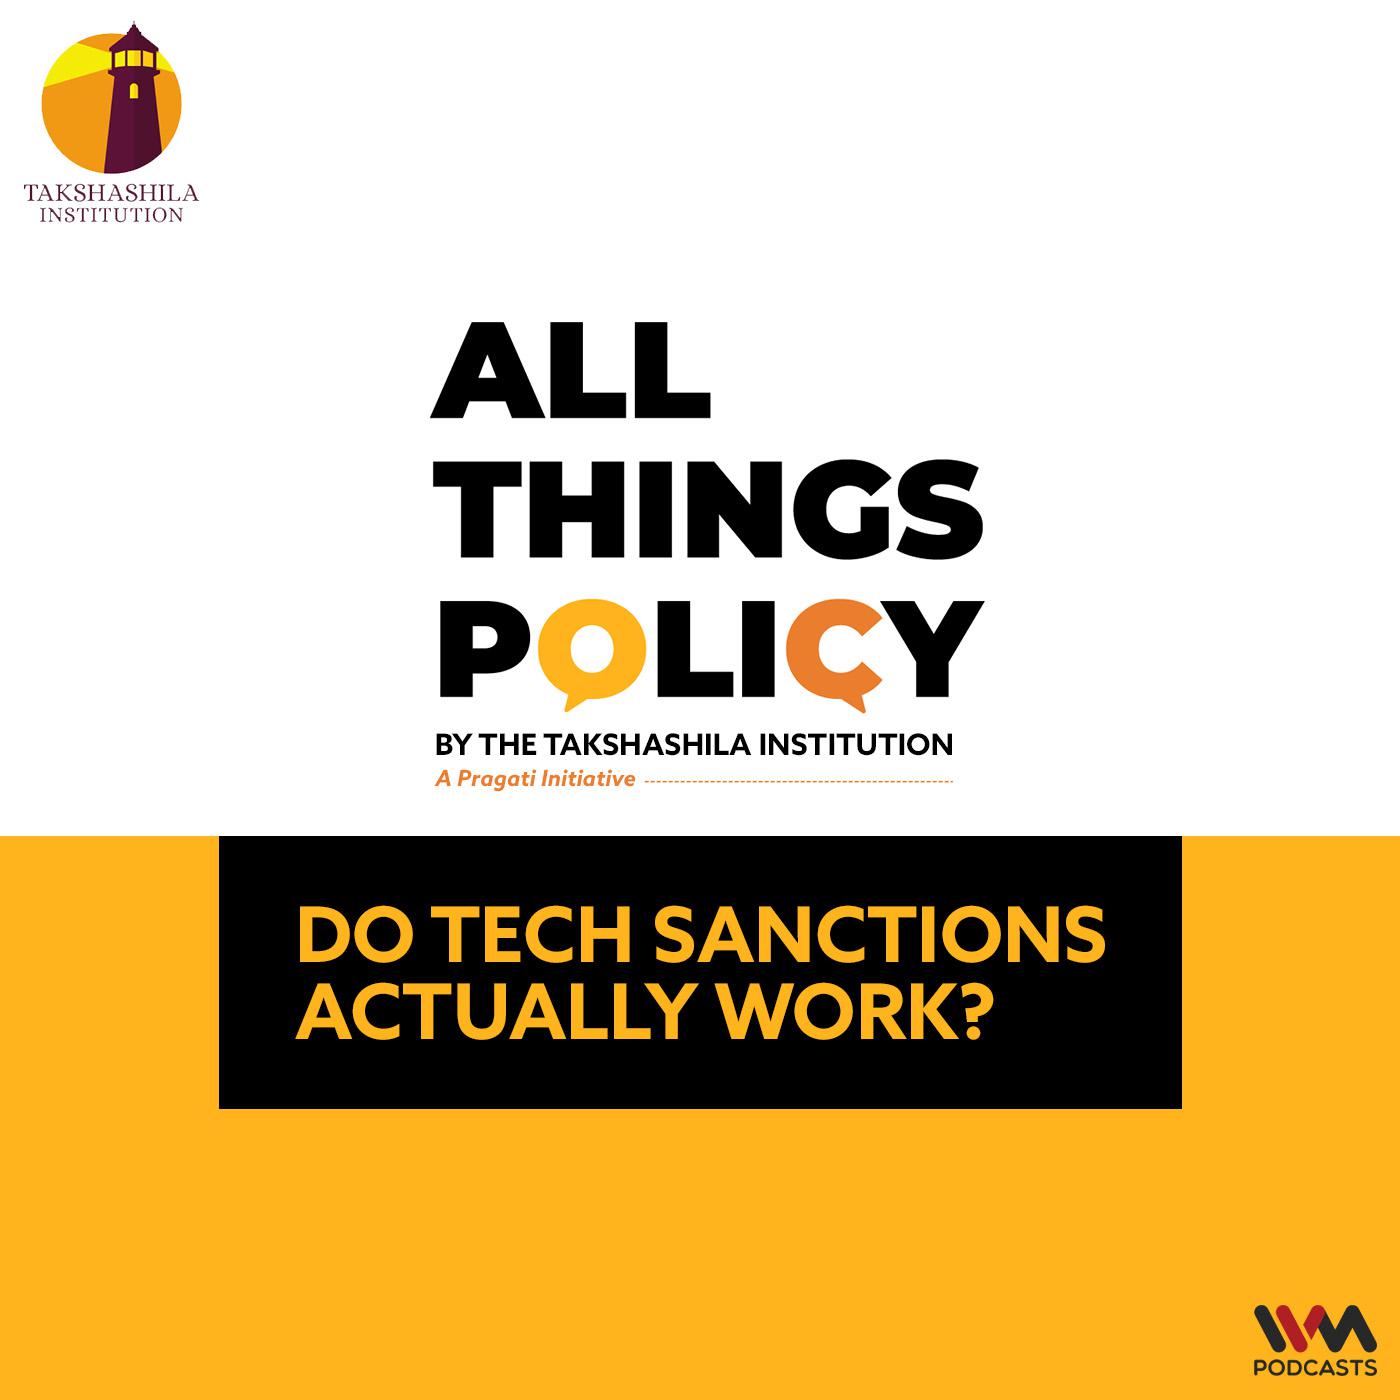 Do Tech Sanctions Actually Work?